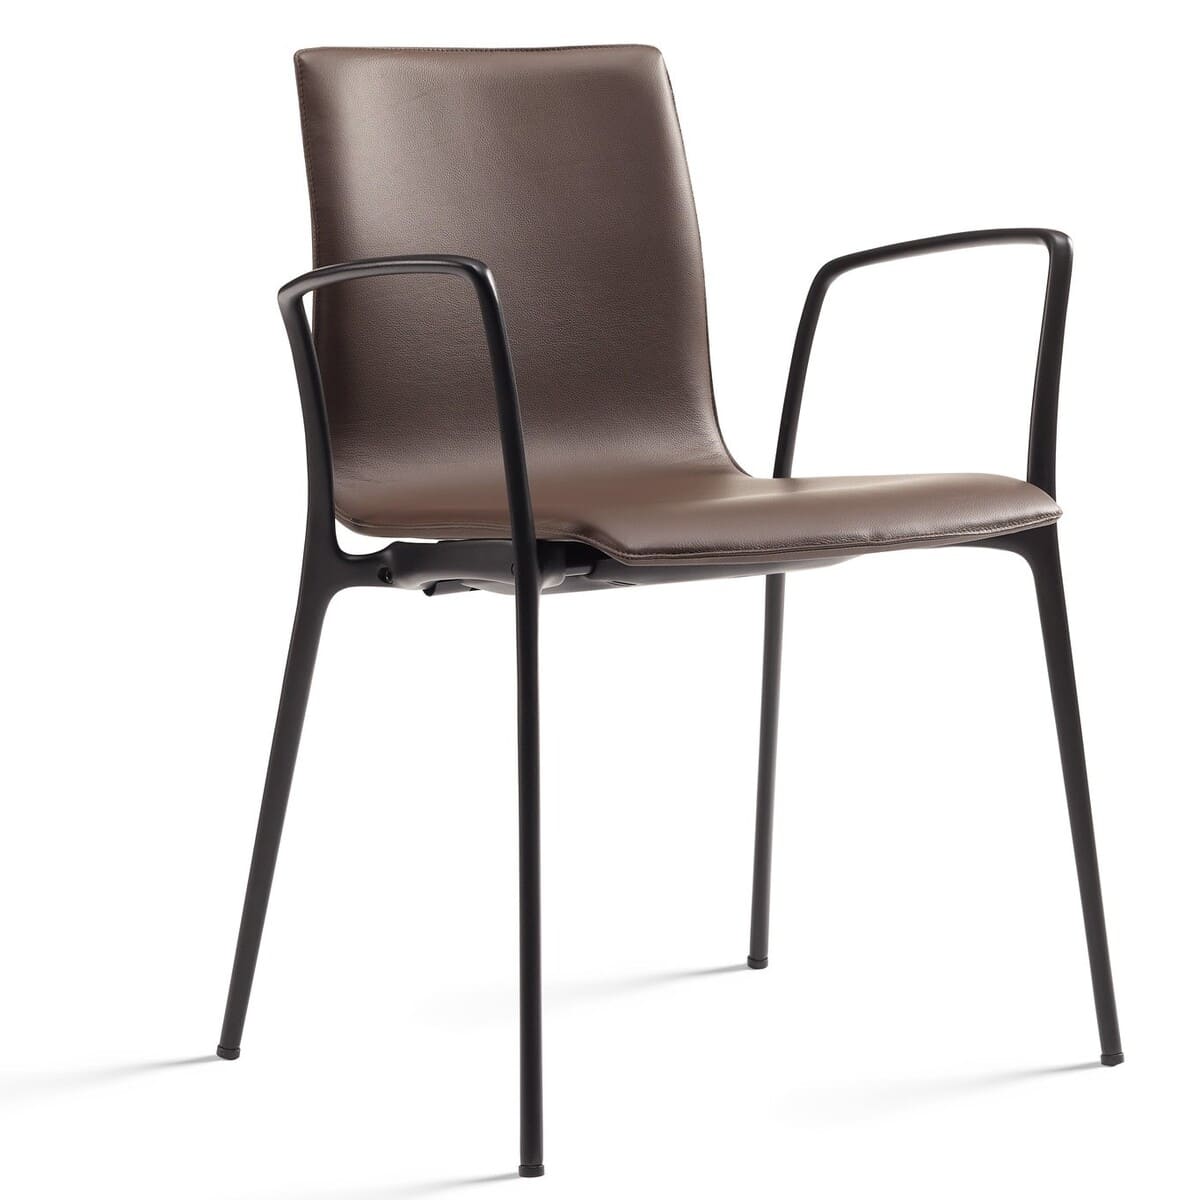 La chaise de réunion GORKA rembourrée et revêtue de similicuir dispose d'une structure esthétique et solide en aluminium.